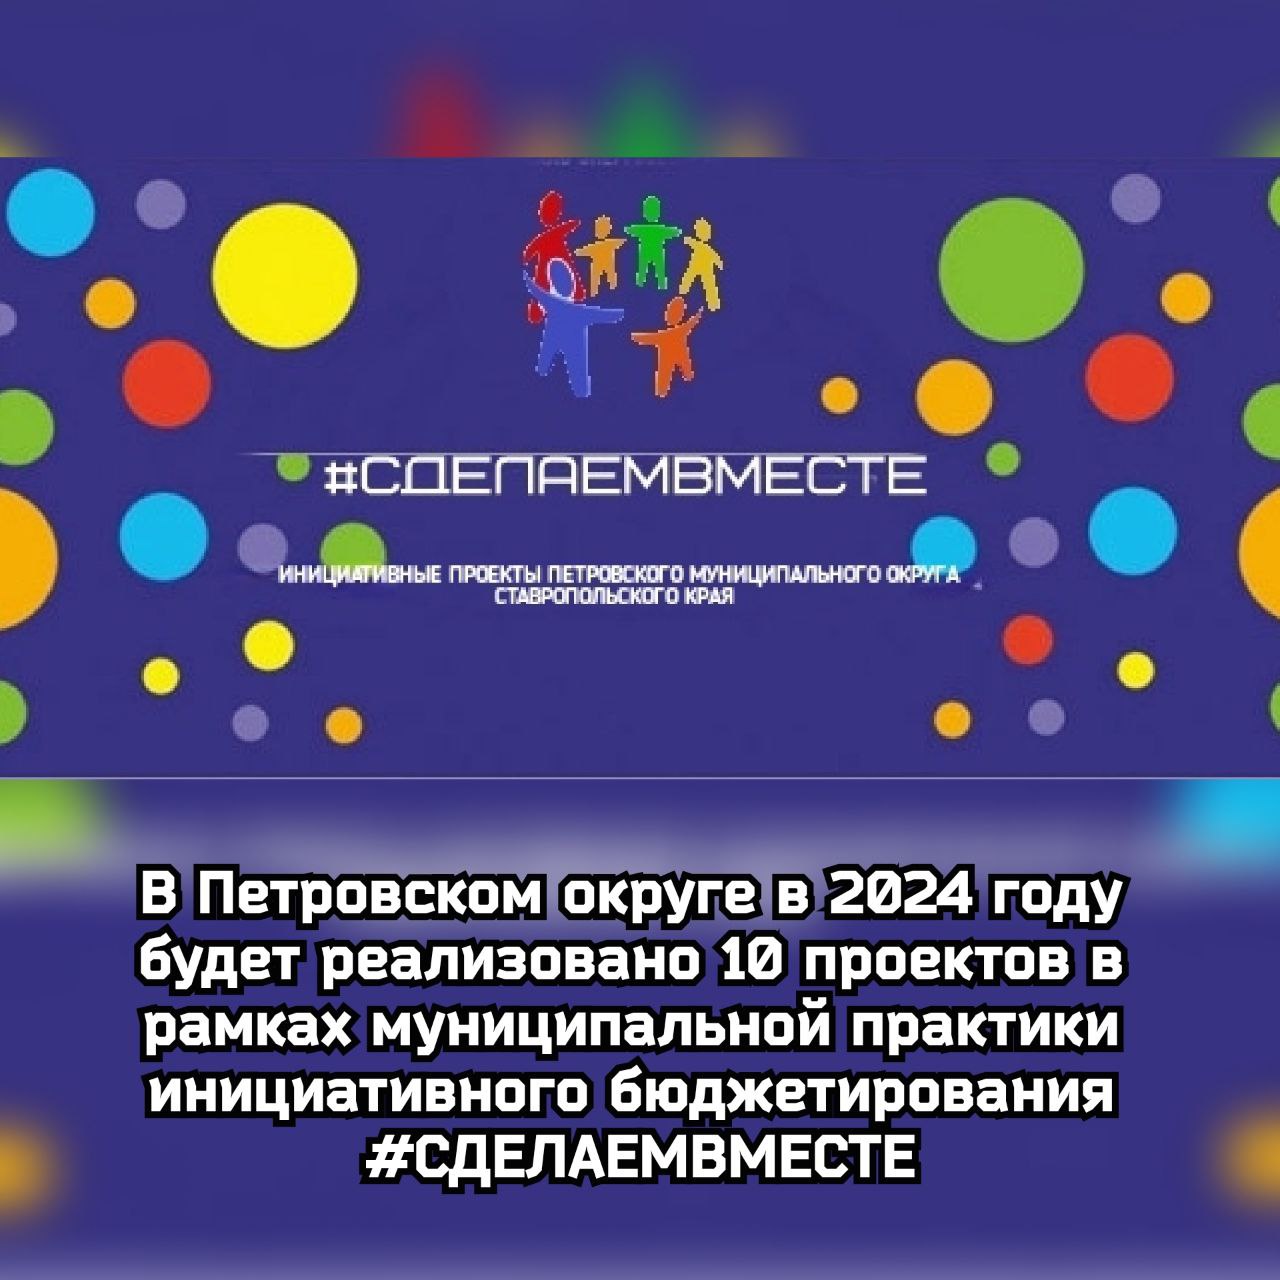 В Петровском округе в 2024 году будет реализовано 10 проектов в рамках муниципальной практики инициативного бюджетирования #СДЕЛАЕМВМЕСТЕ.